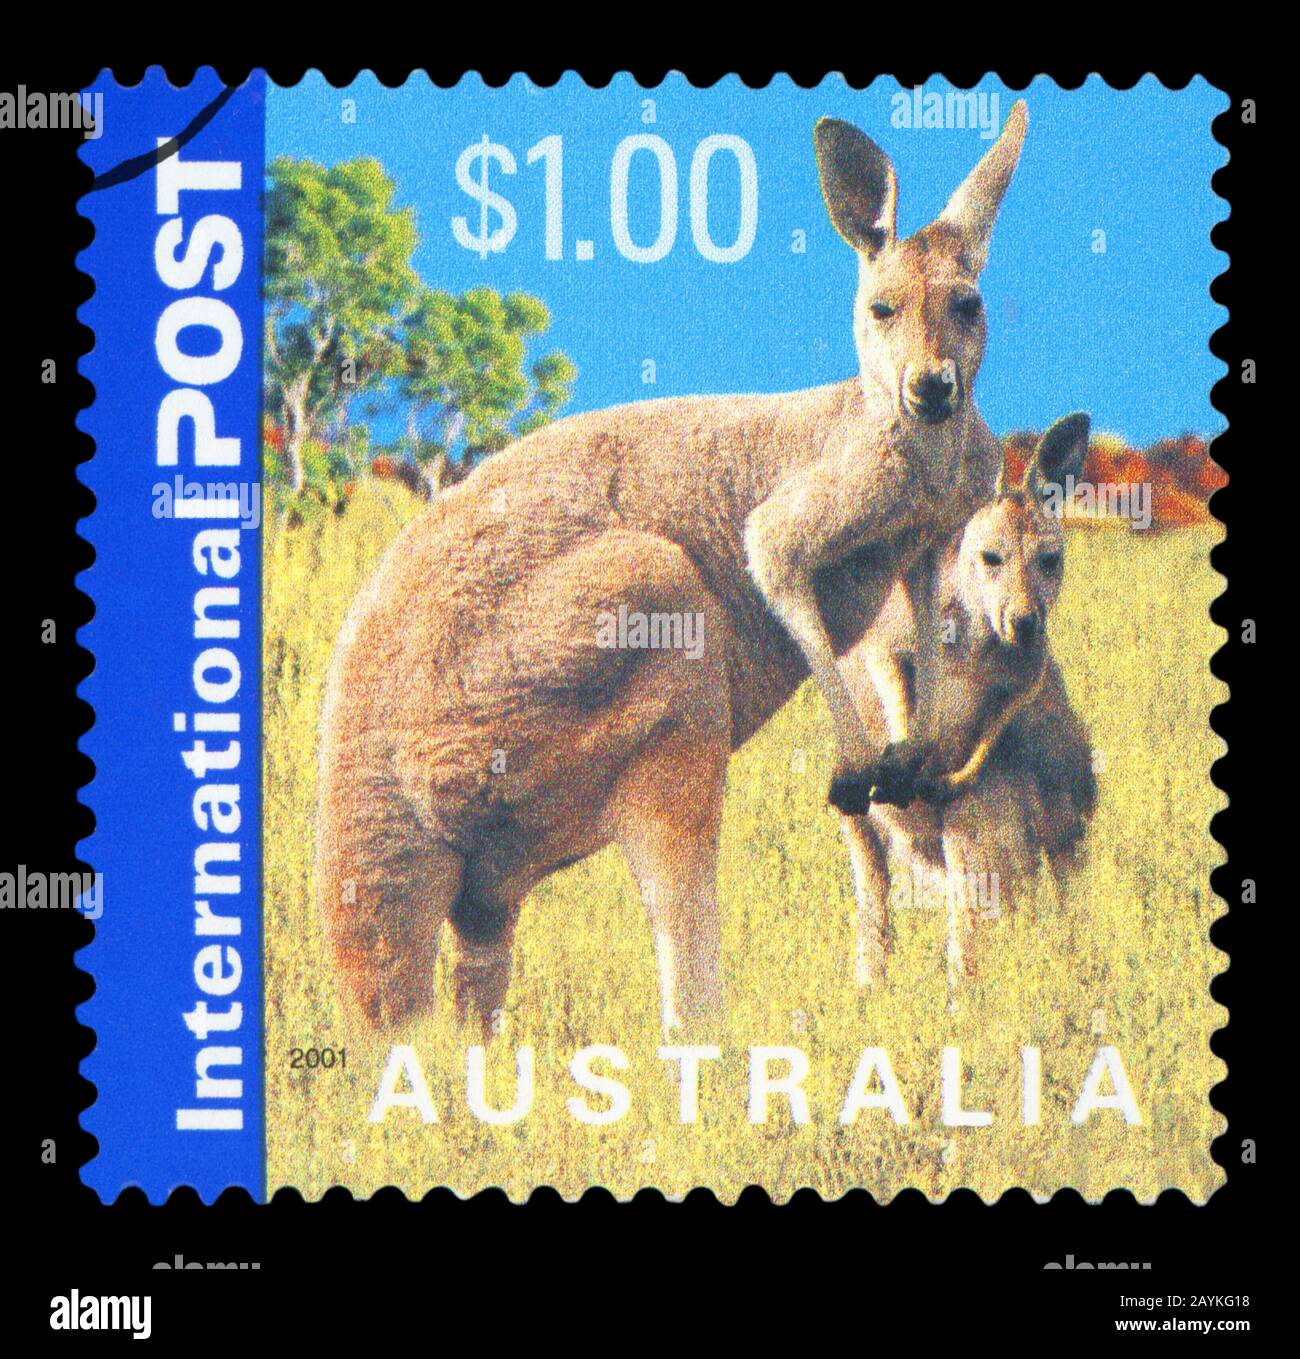 L'AUSTRALIE - circa 2001 : timbre imprimé en Australie montre kangourous, série, vers 2001 Banque D'Images